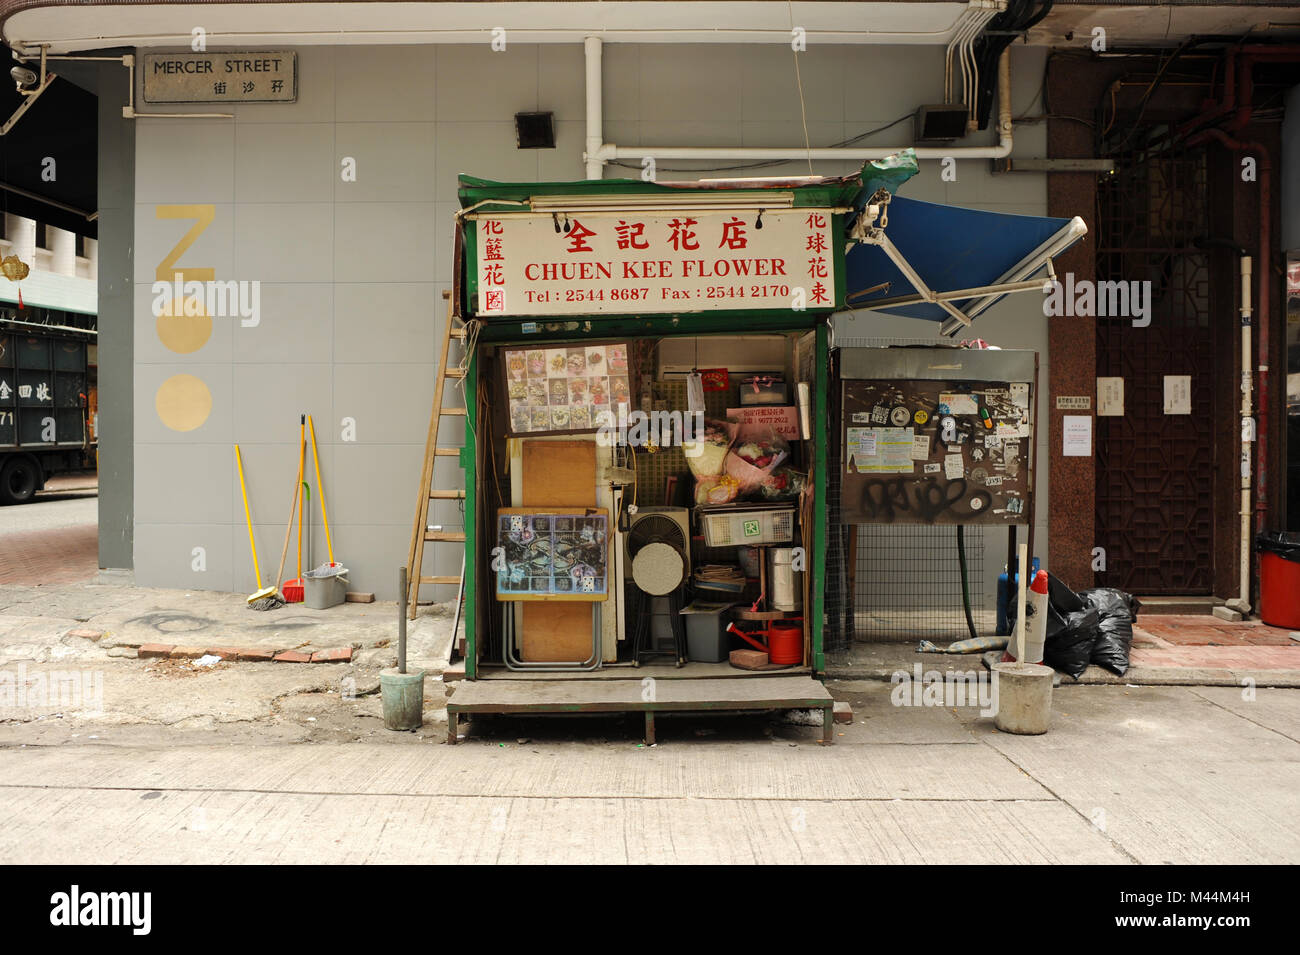 Chuen Kee Flower shop, Mercer Street,  Sheung Wan, Hong Kong Stock Photo